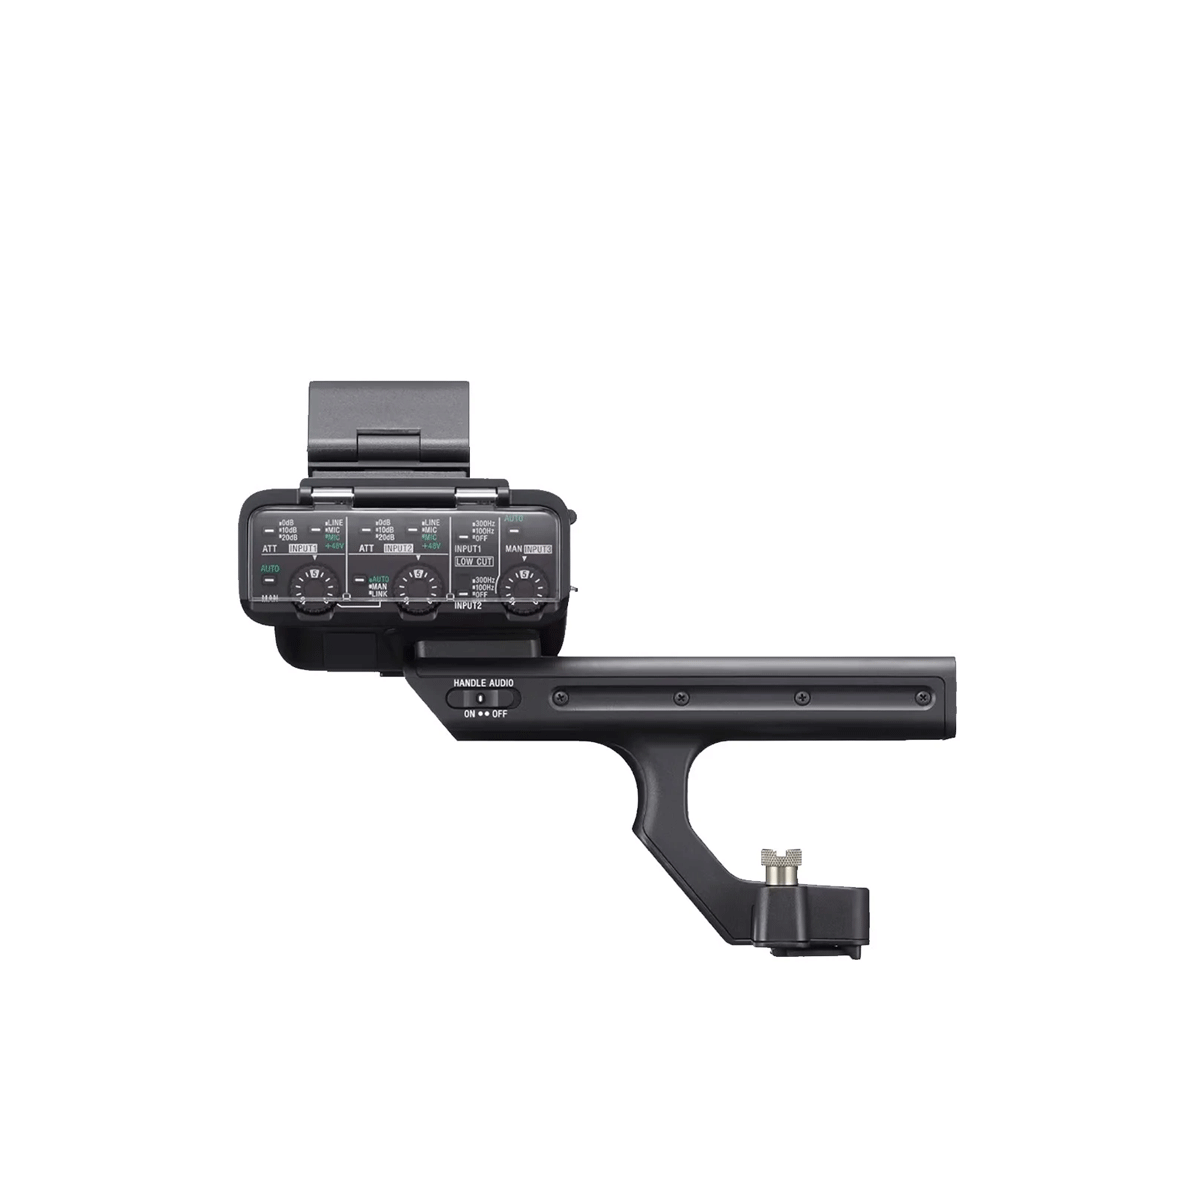  Tay cầm Sony XLR-H1 cho máy quay chuyên dụng - Hàng chính hãng 